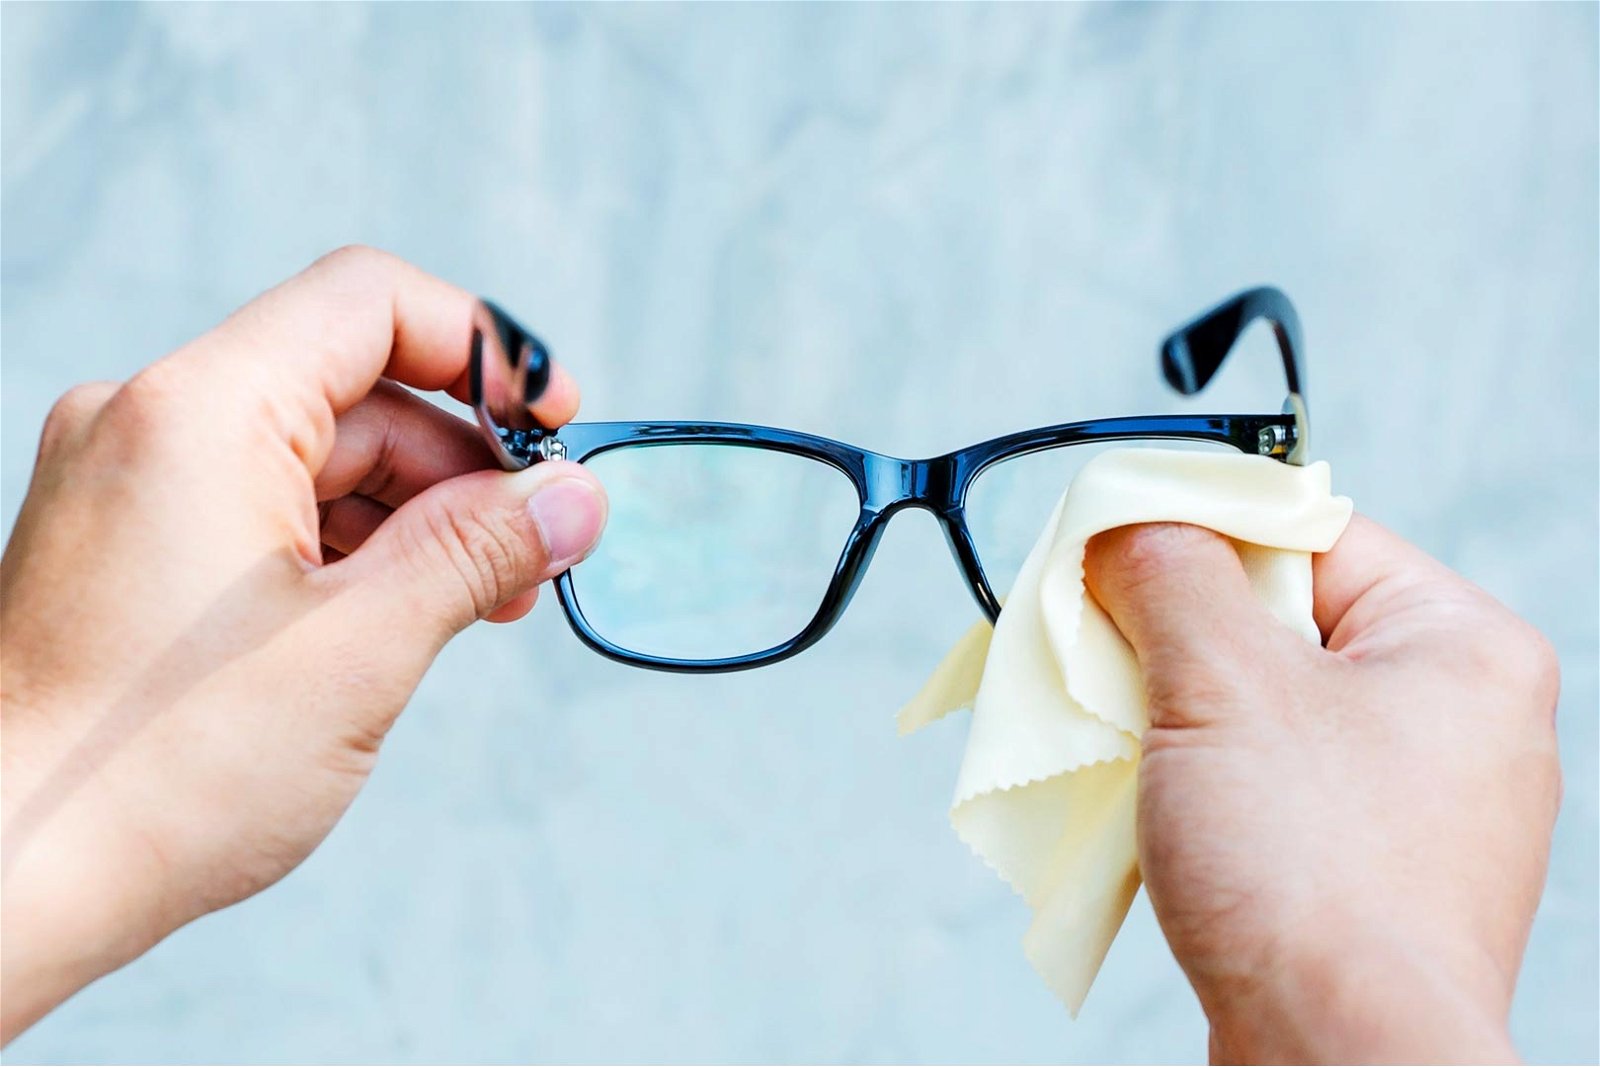 Come pulire gli occhiali: i 3 modi per avere lenti perfette.